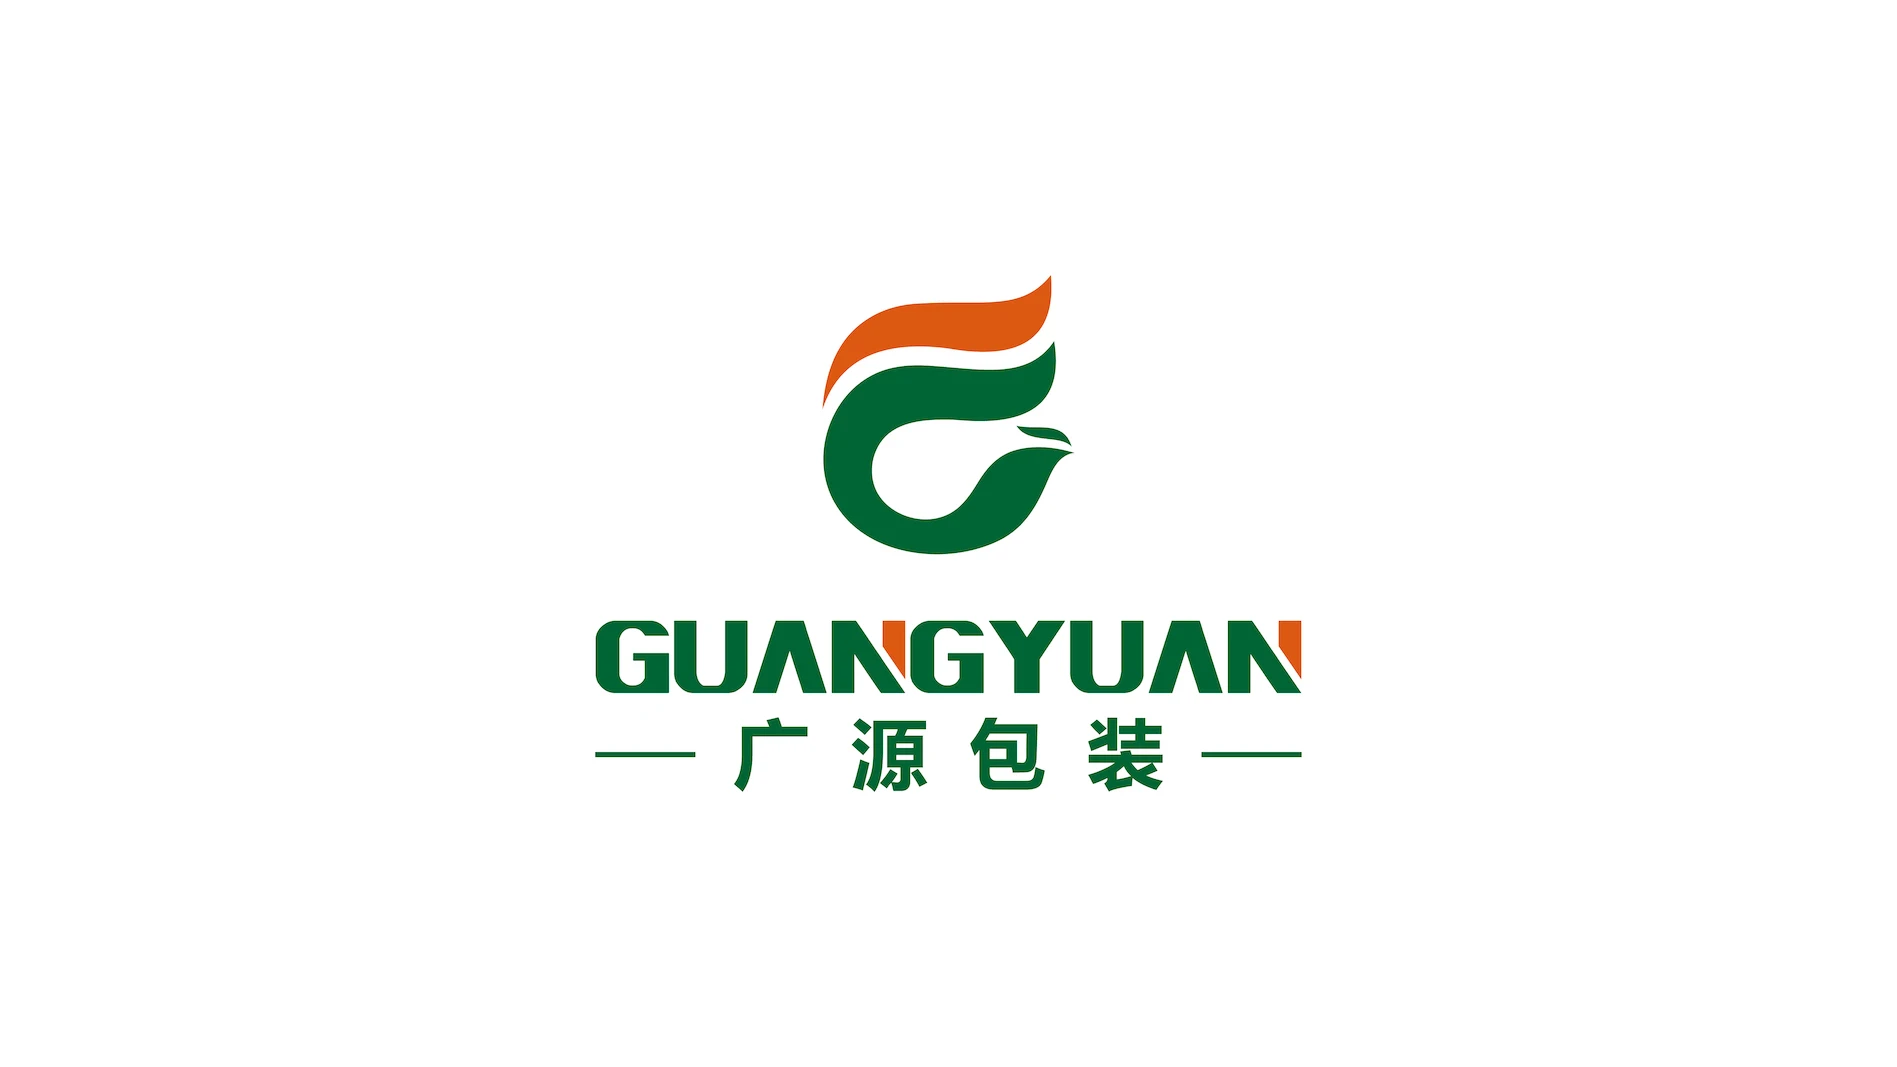 Haiyan Guangyuan Packing Co., Ltd.